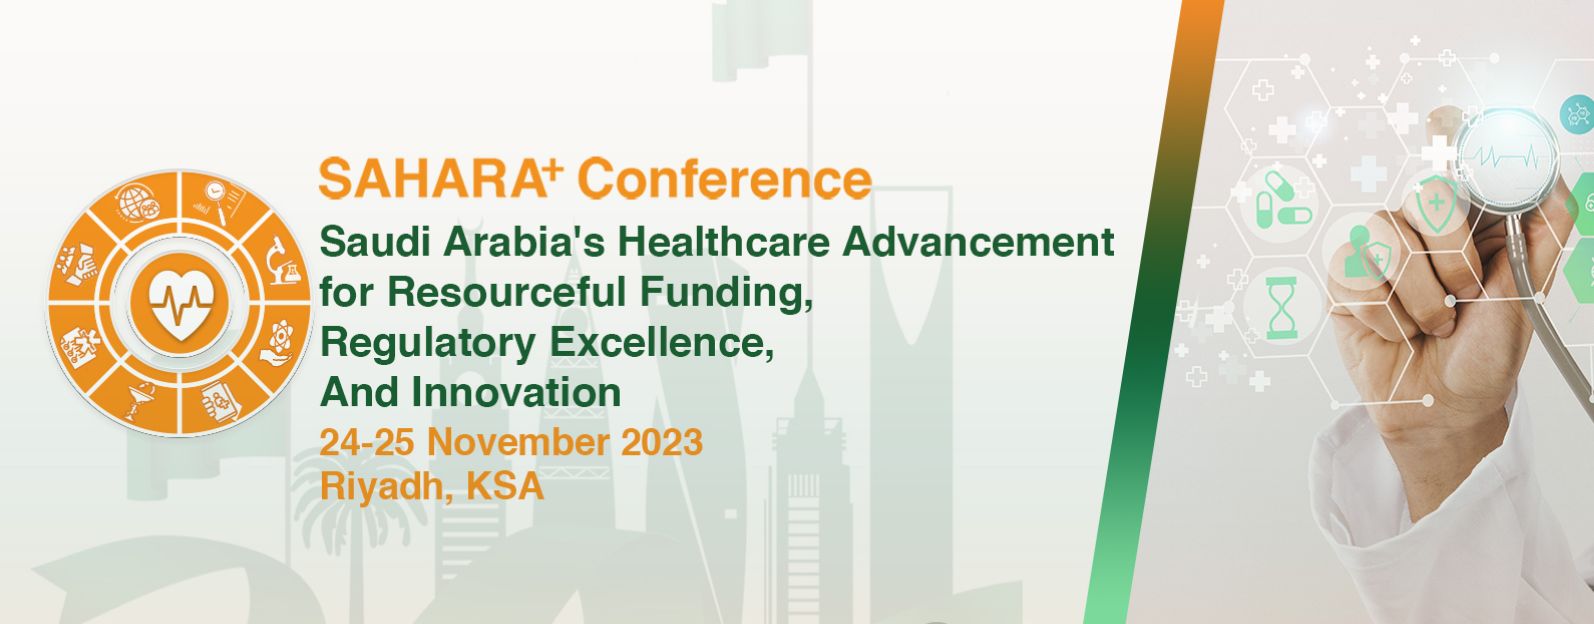 SAHARA+ Conference, Riyadh, Saudi Arabia